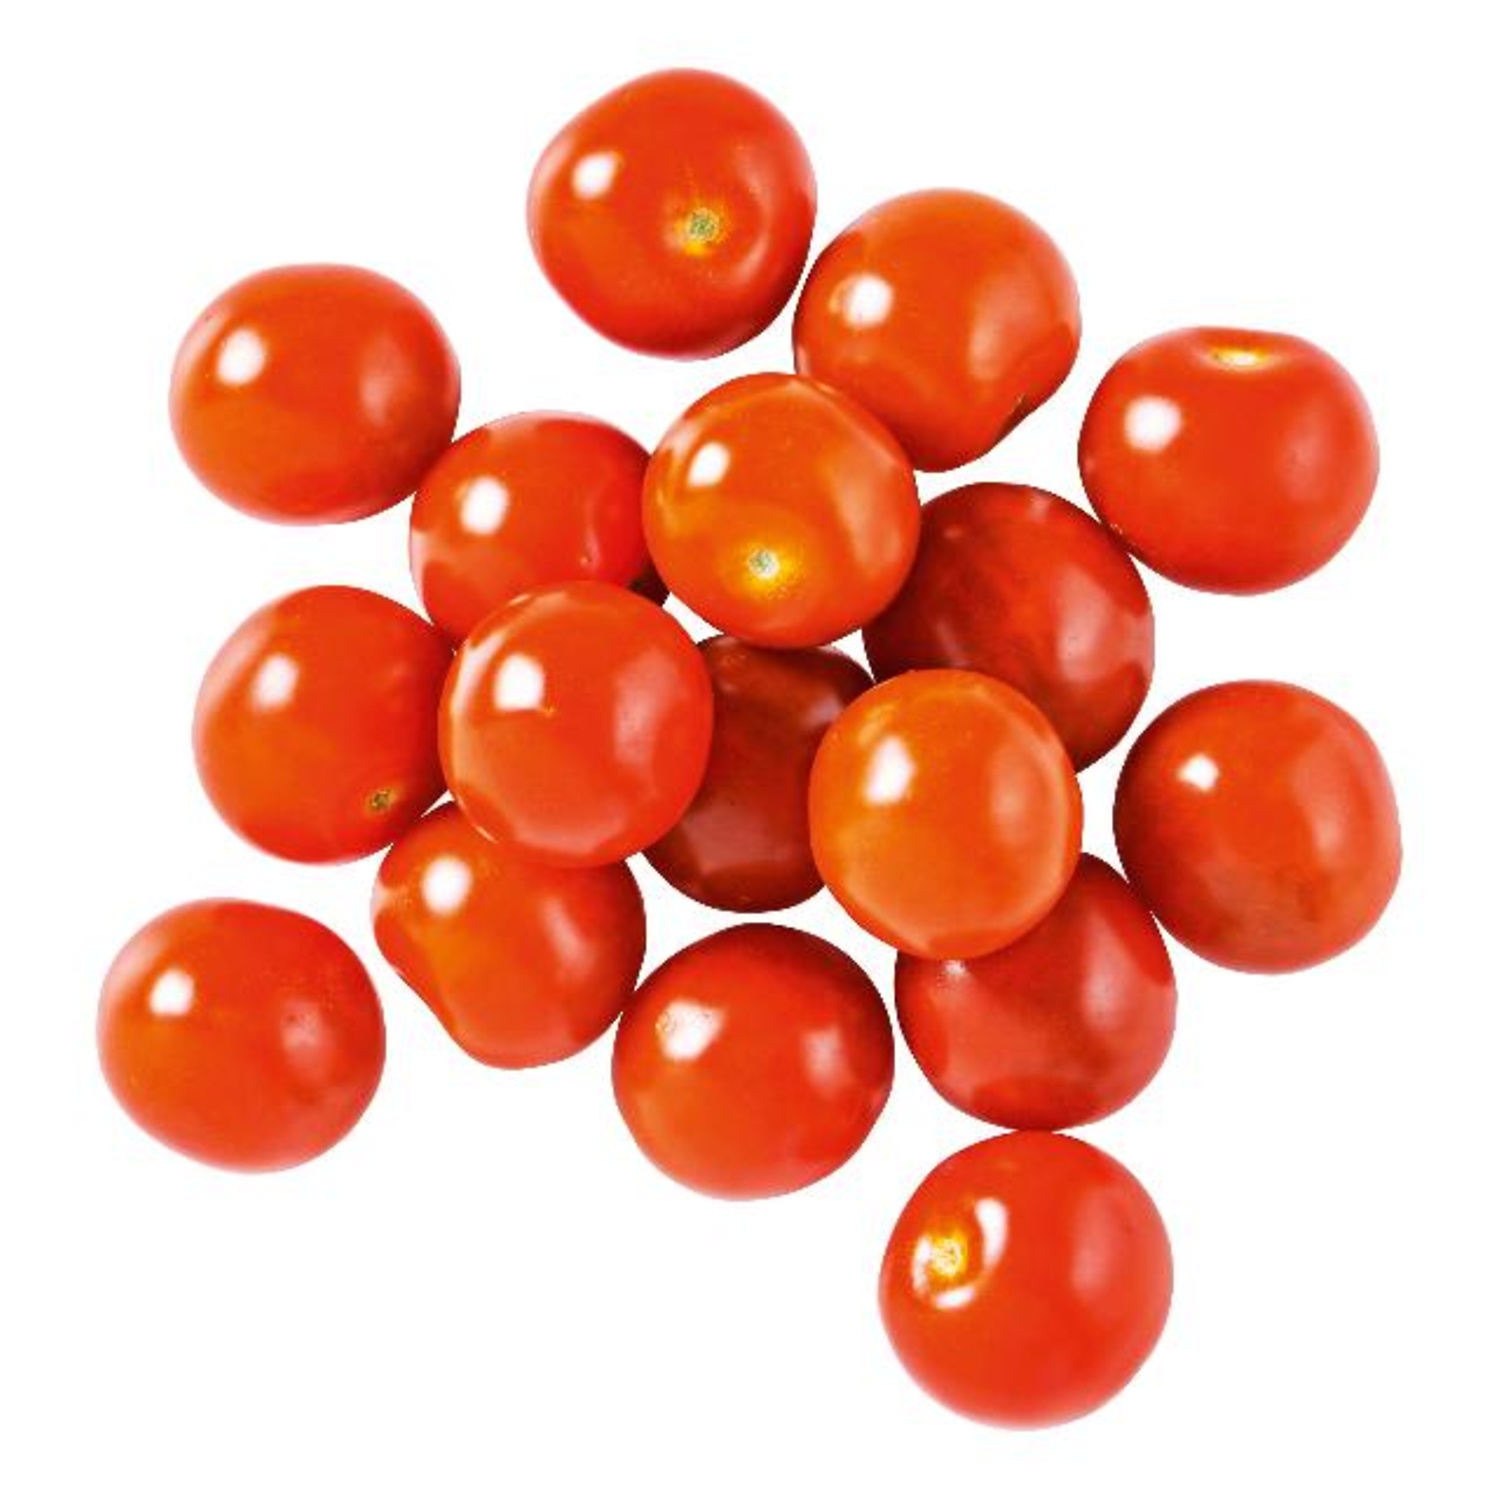 Tomaatjes Cherrie rood bakje 250 gram